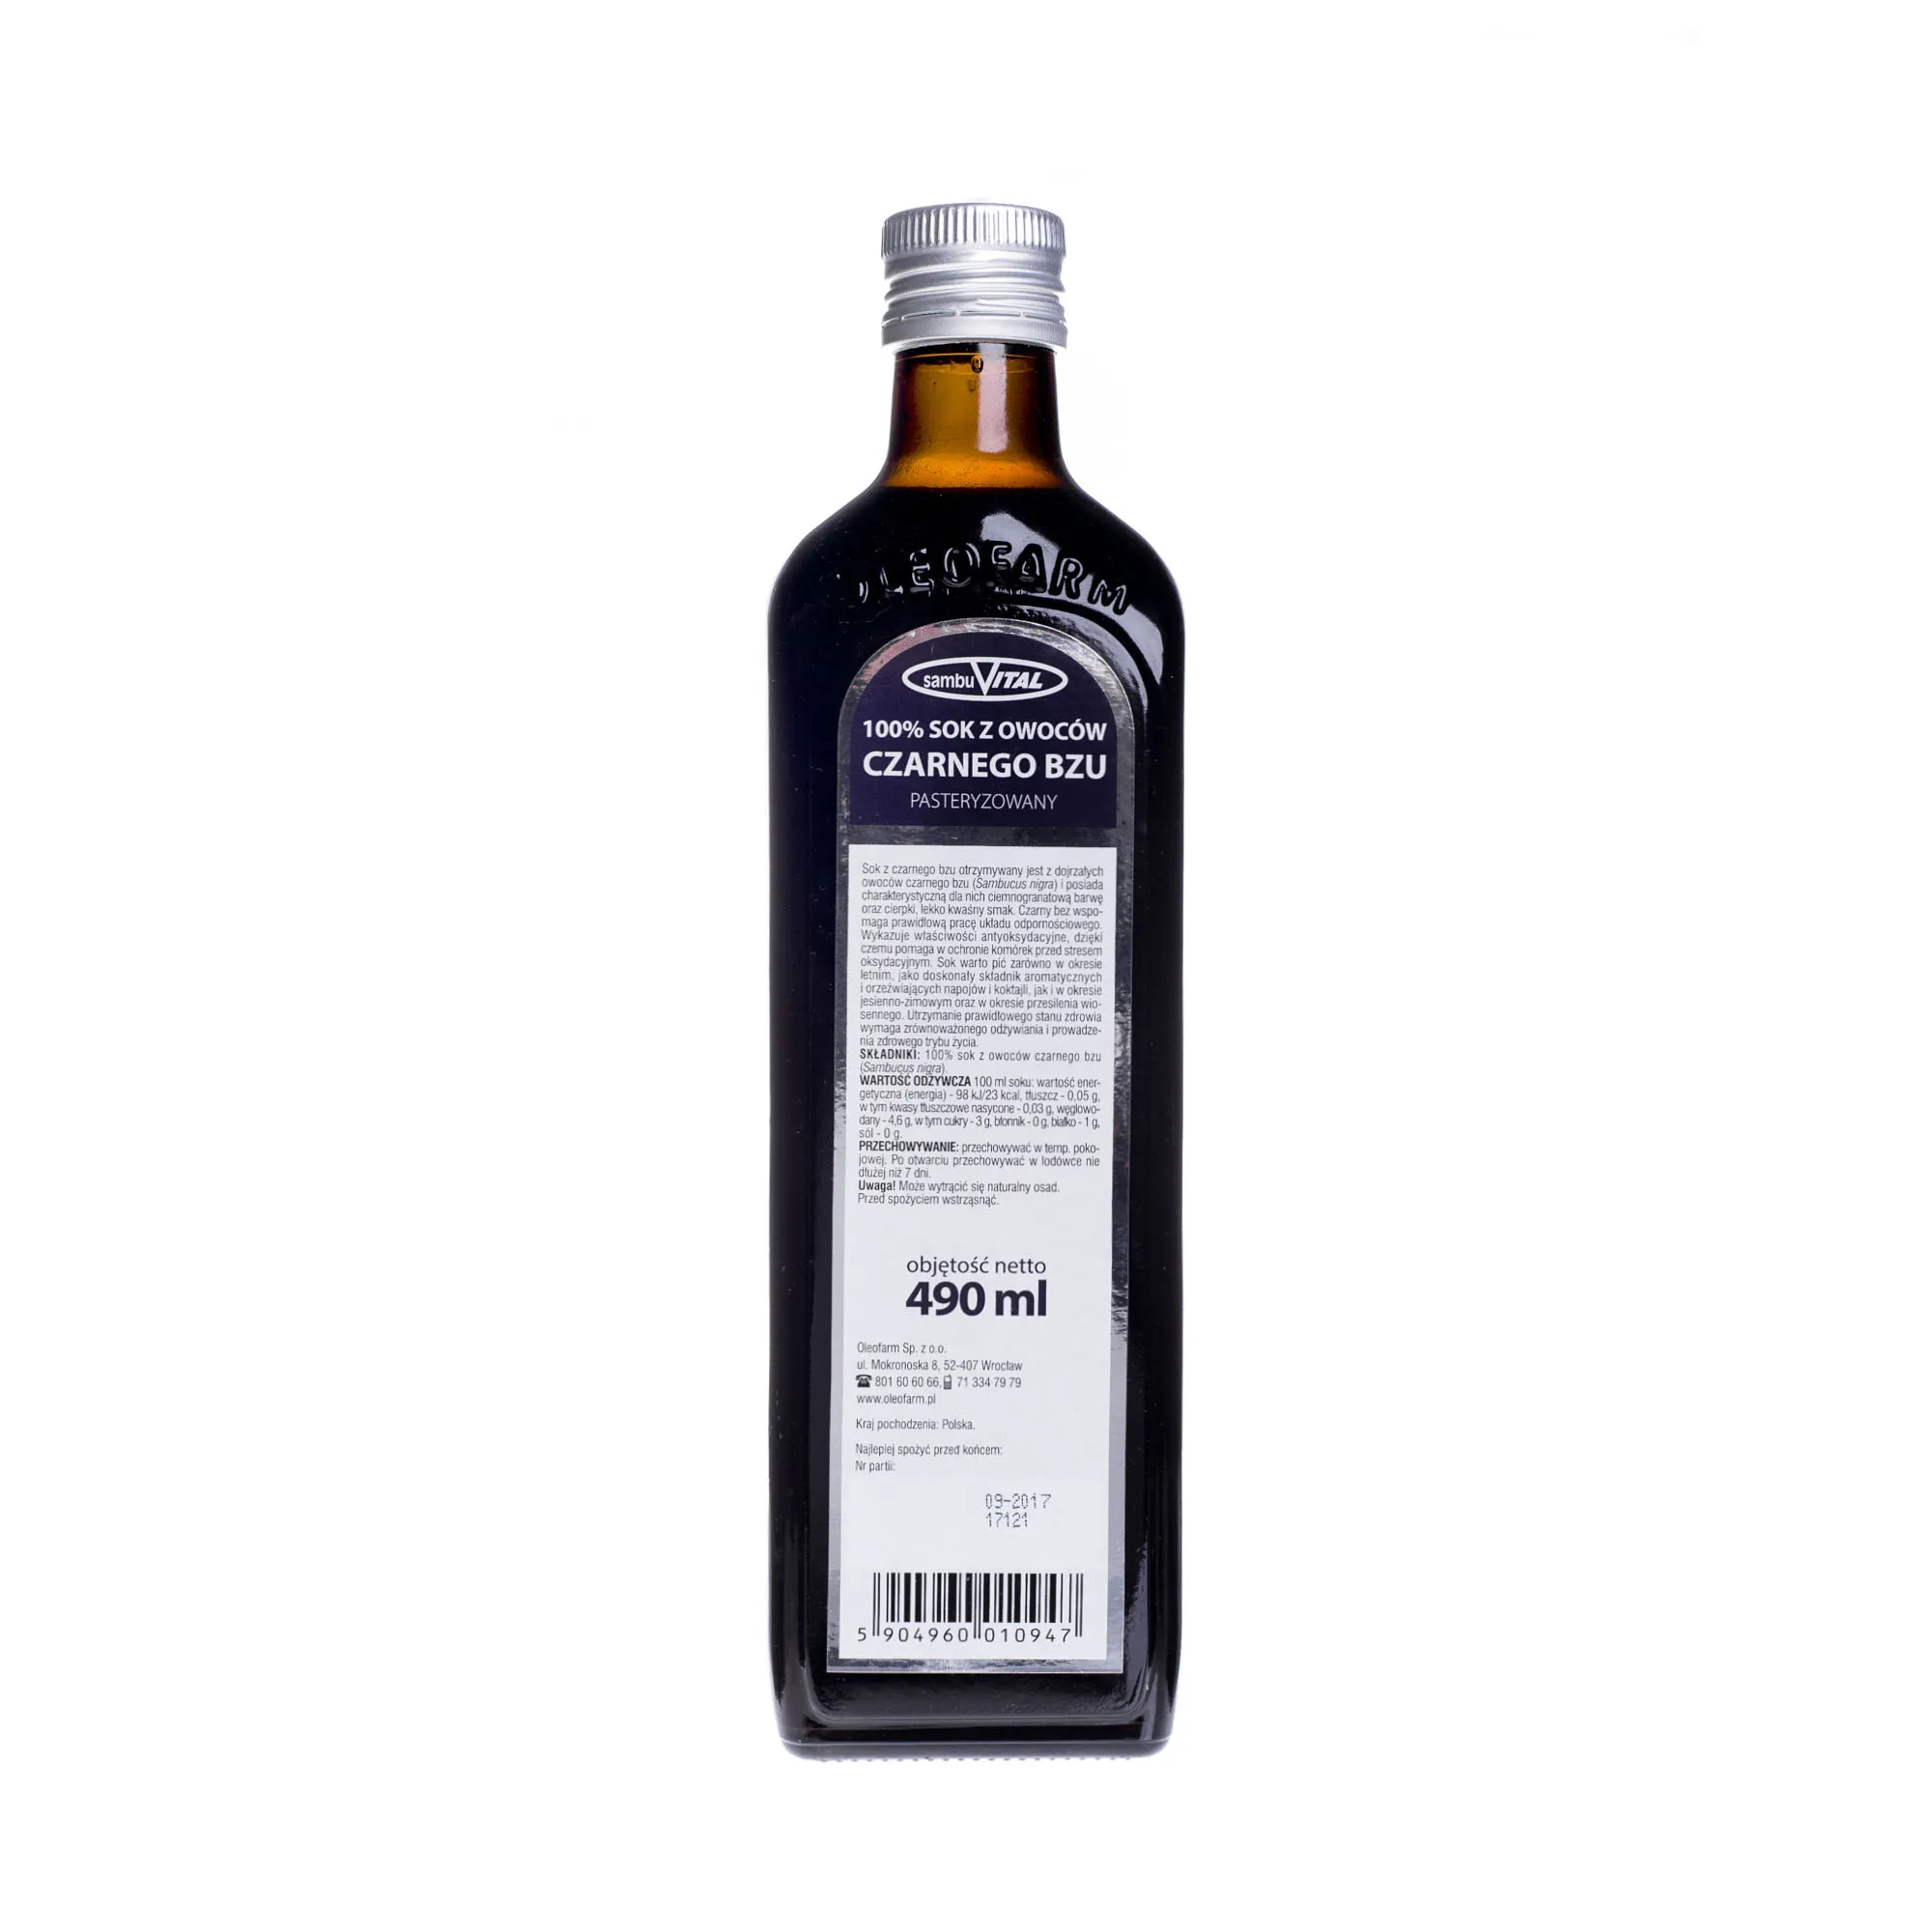 SambuVital 100% sok z owoców czarnego bzu, 490 ml 